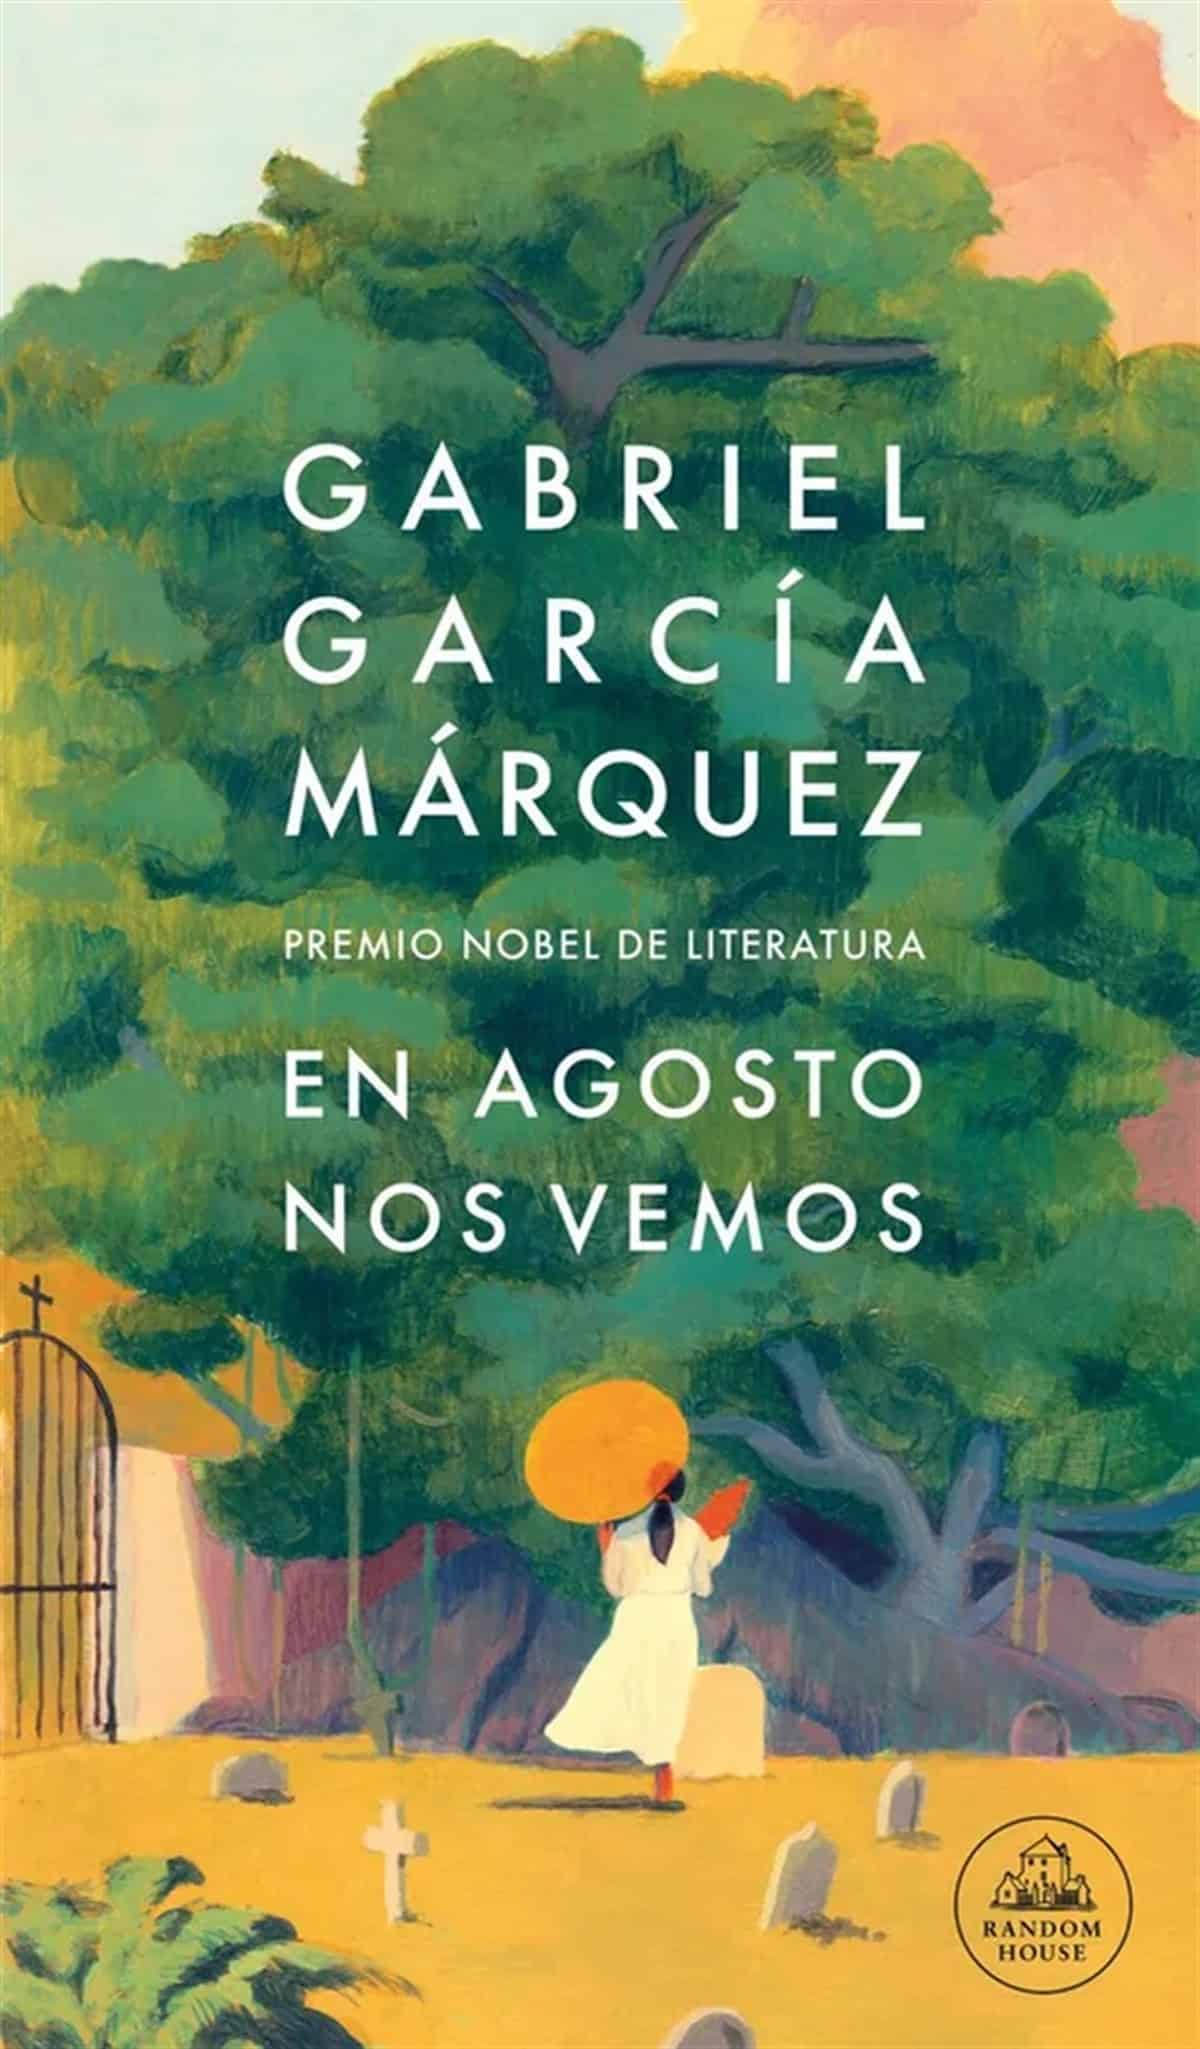 ¿De qué tratará la nueva novela de Gabriel García Márquez?